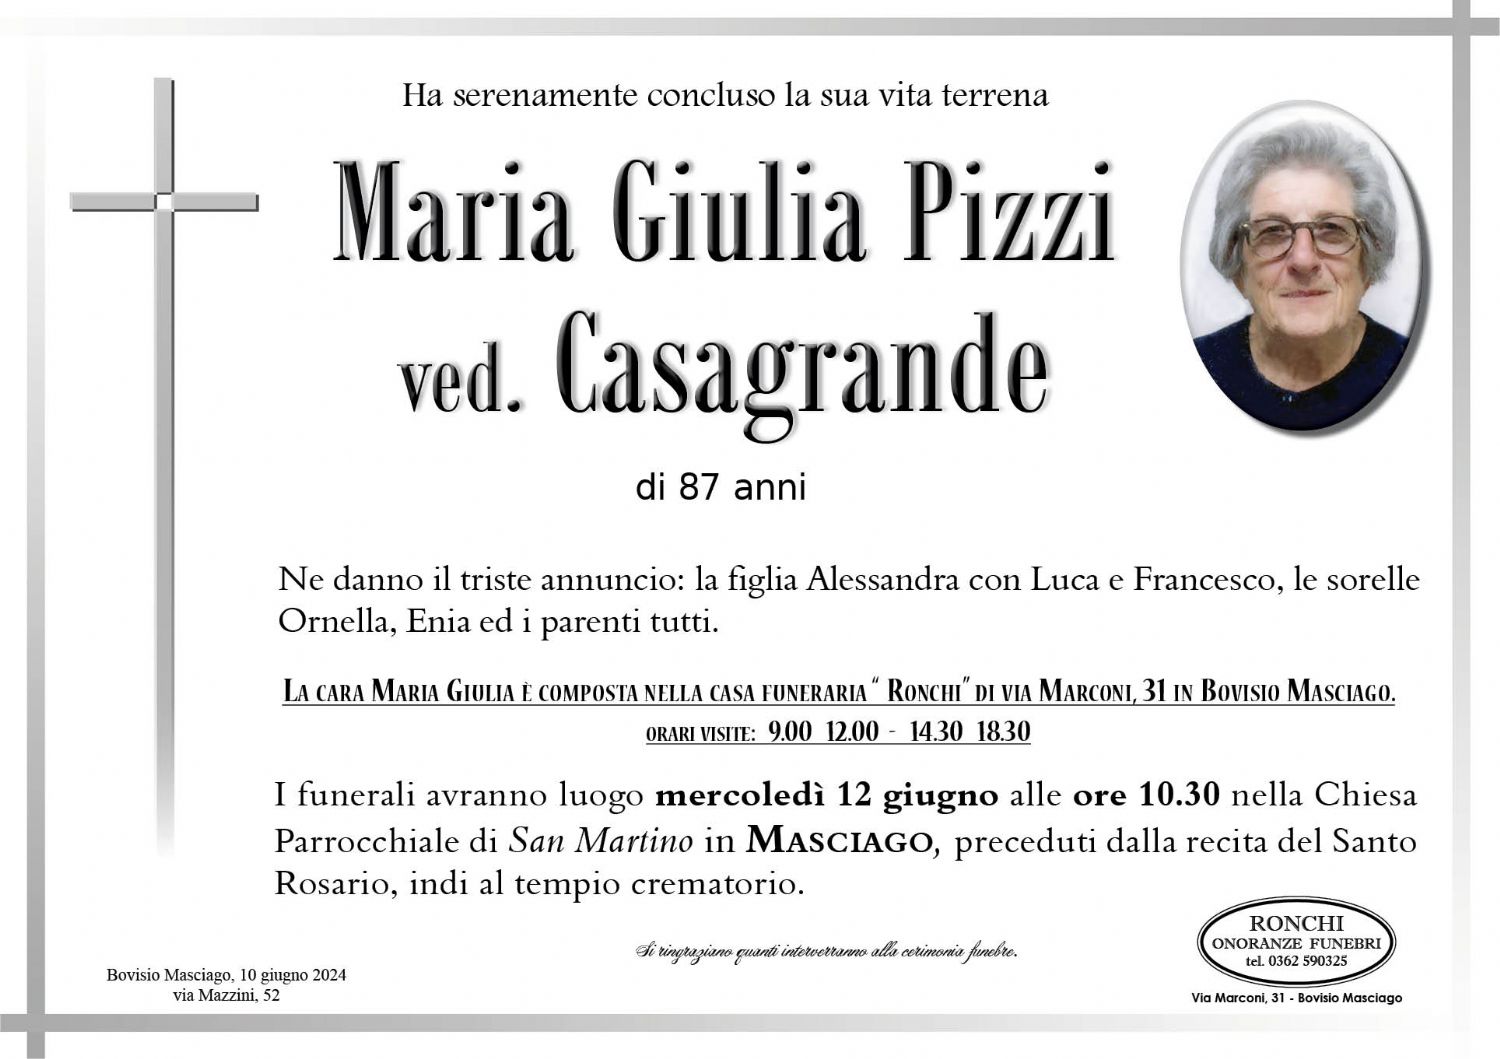 Maria Giulia Pizzi